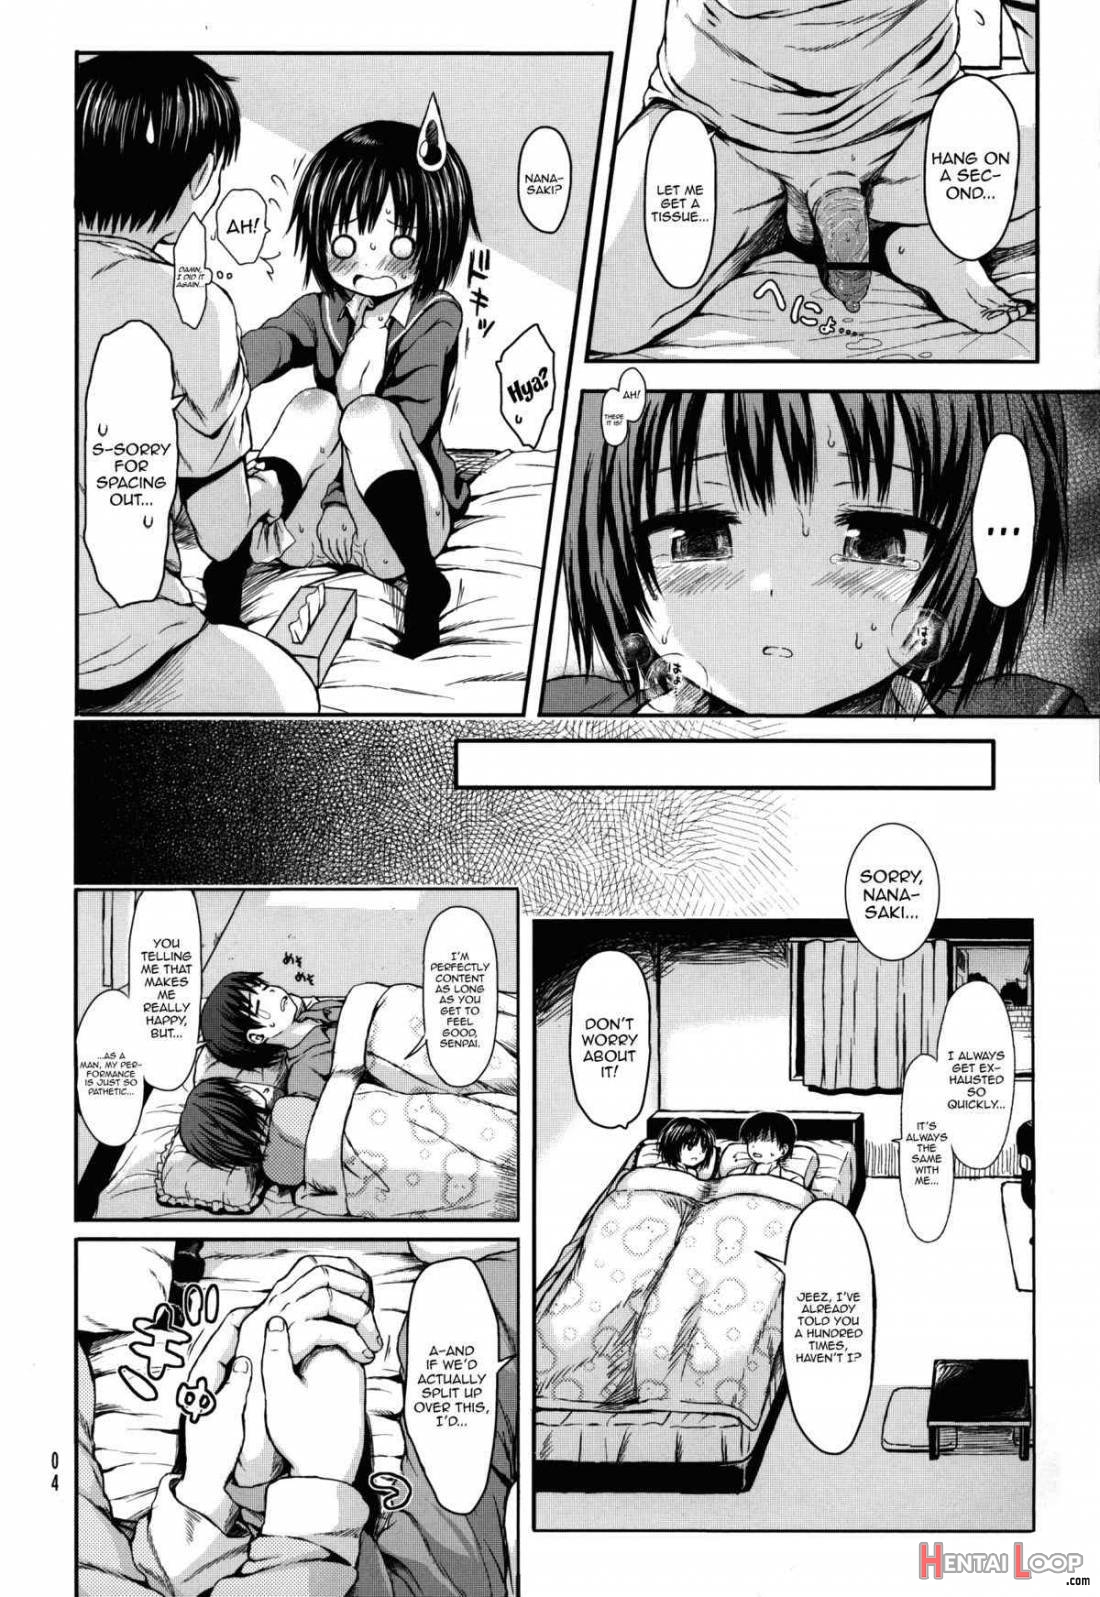 Nanasaki After page 3